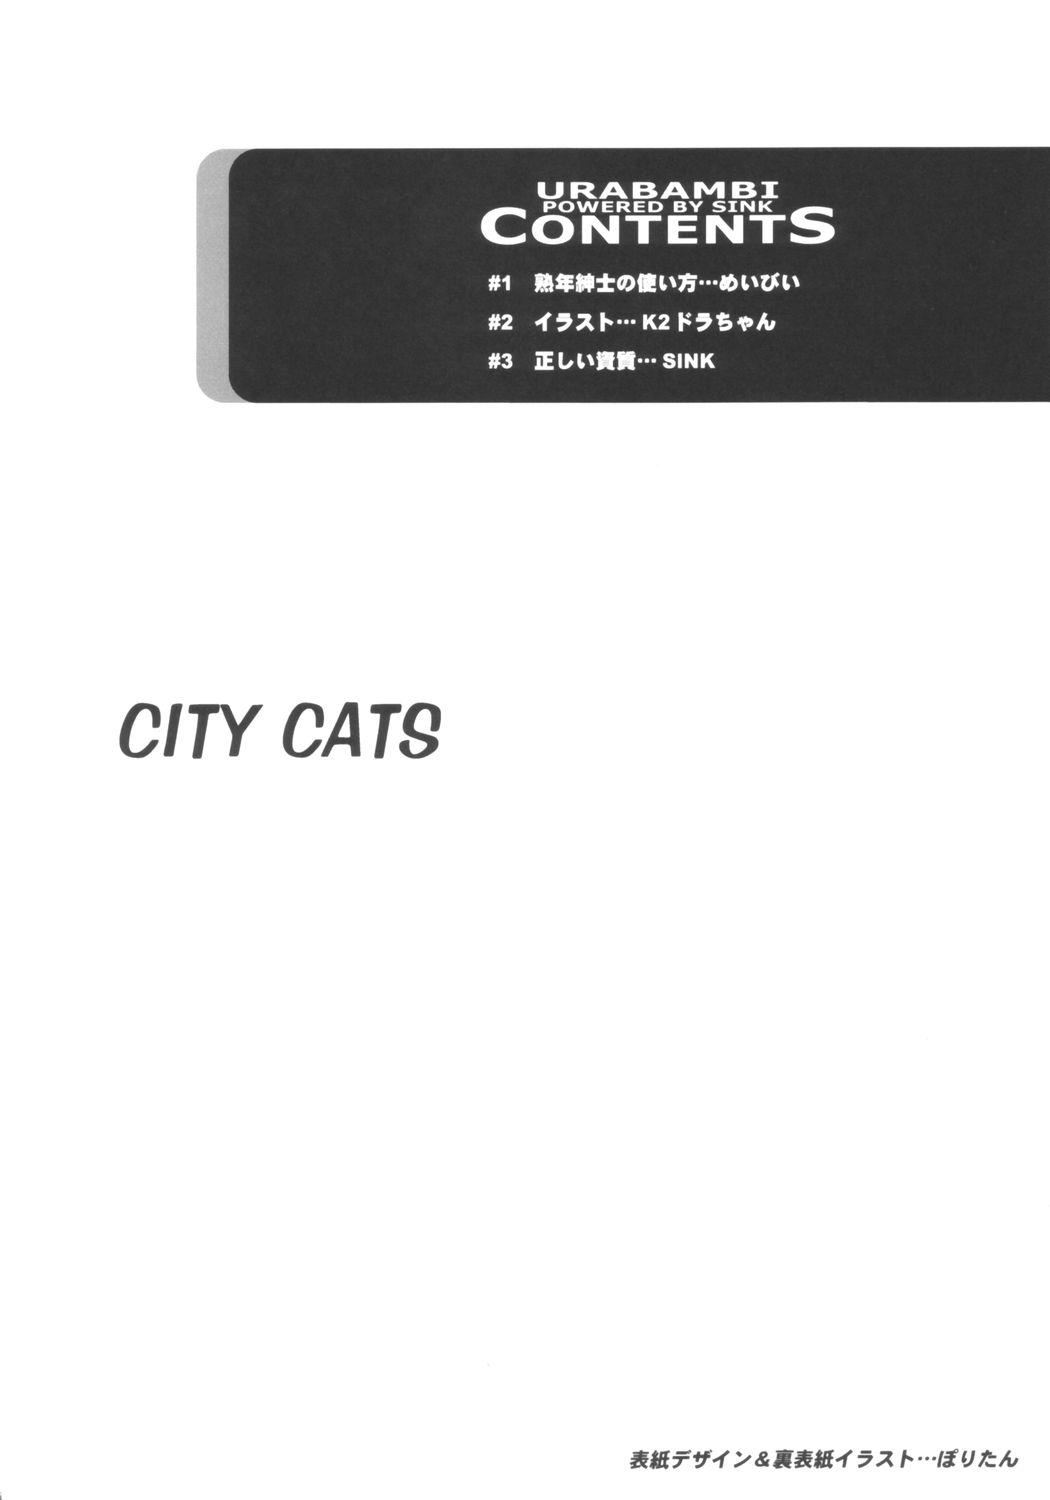 Rough Porn Urabambi Vol. 21 - City Cats - Kikis delivery service Letsdoeit - Page 3